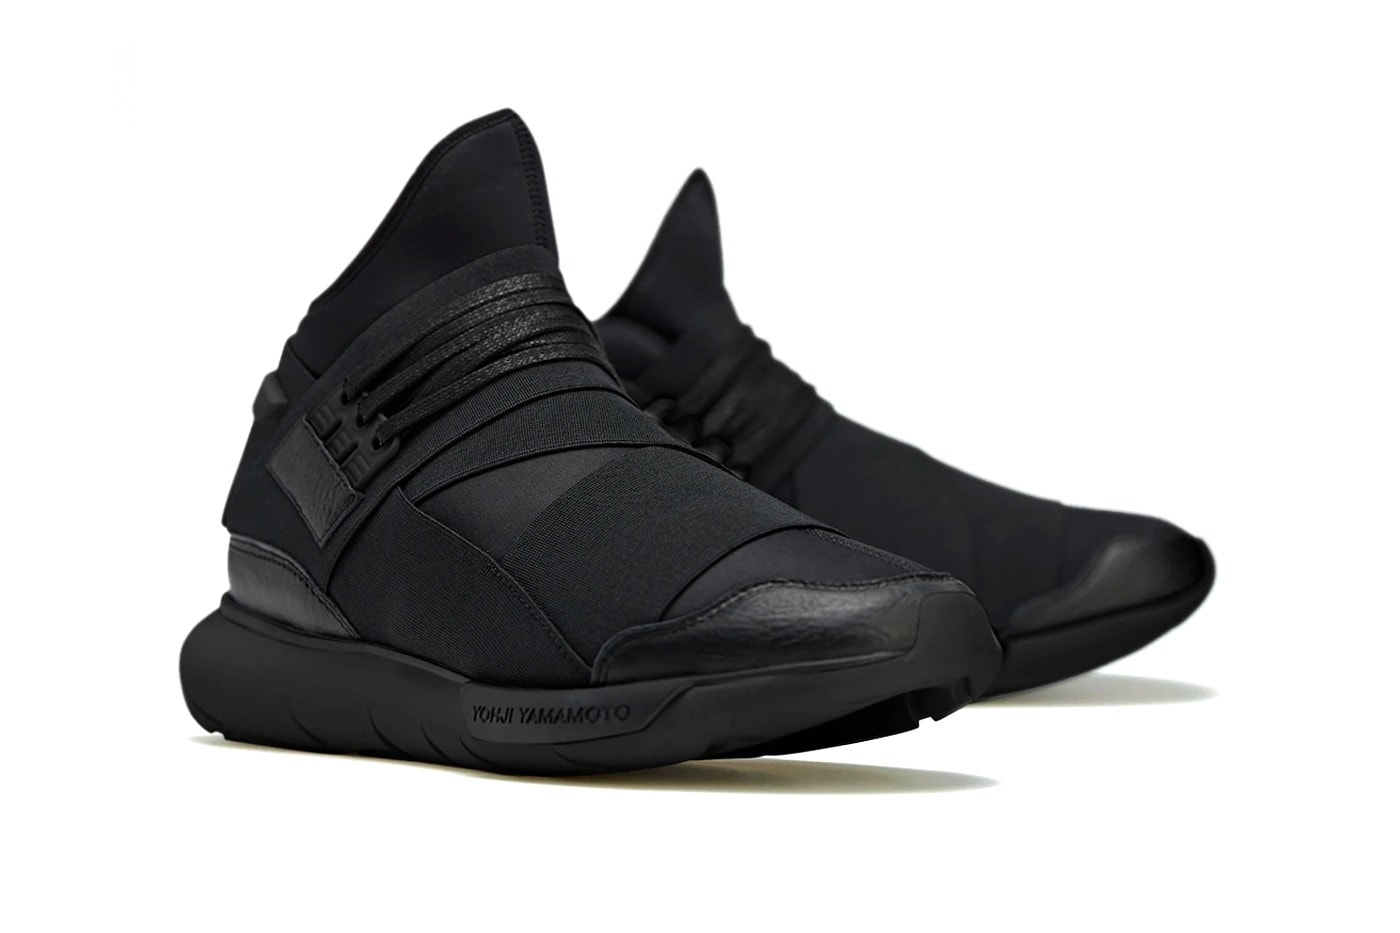 經典人氣鞋款 adidas Y-3 Qasa High「Triple Black」即將重新發售